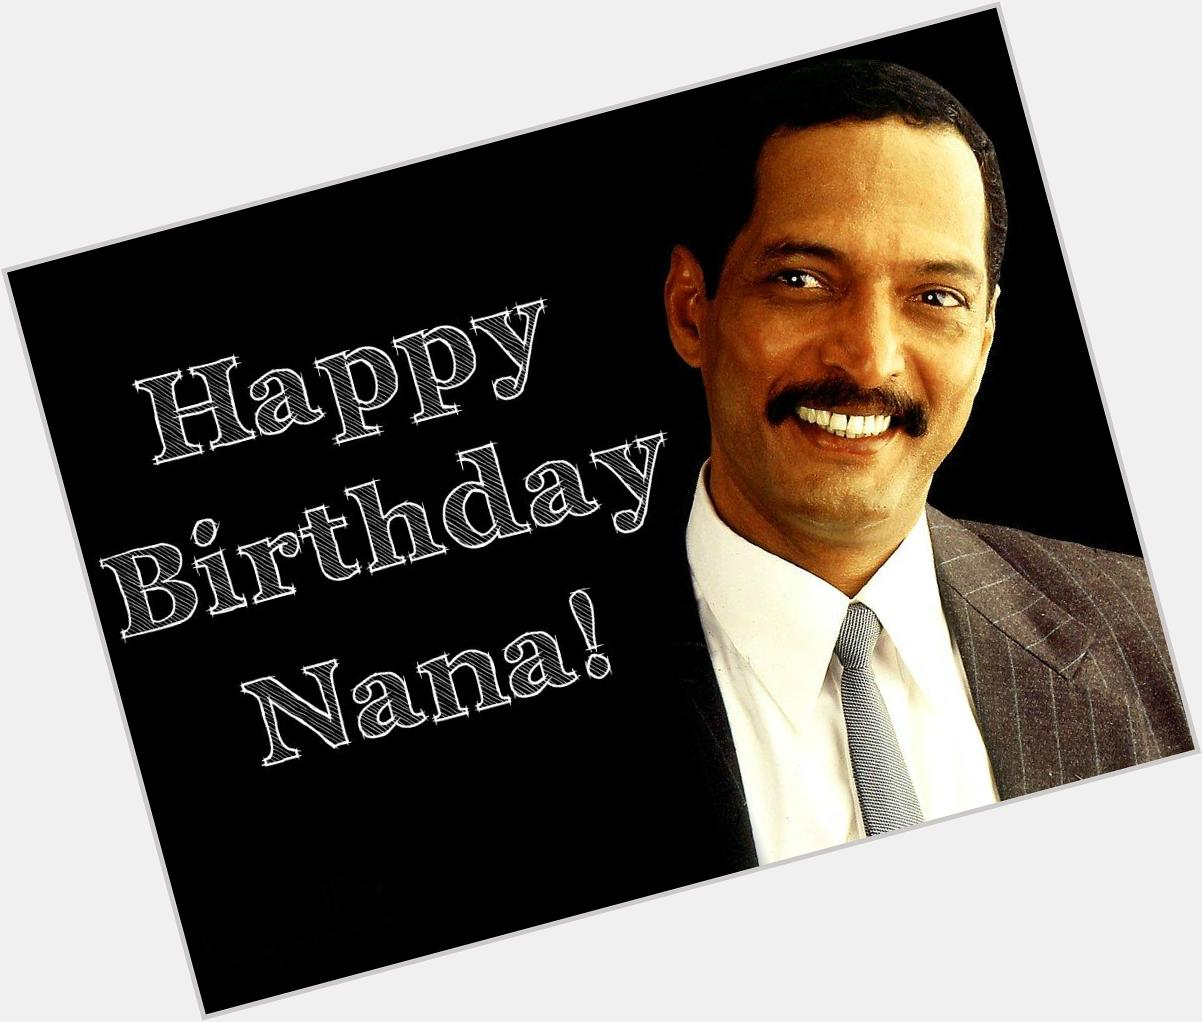 Happy (belated) Birthday Nana Patekar!

Achha hai, bahut achha hai! 